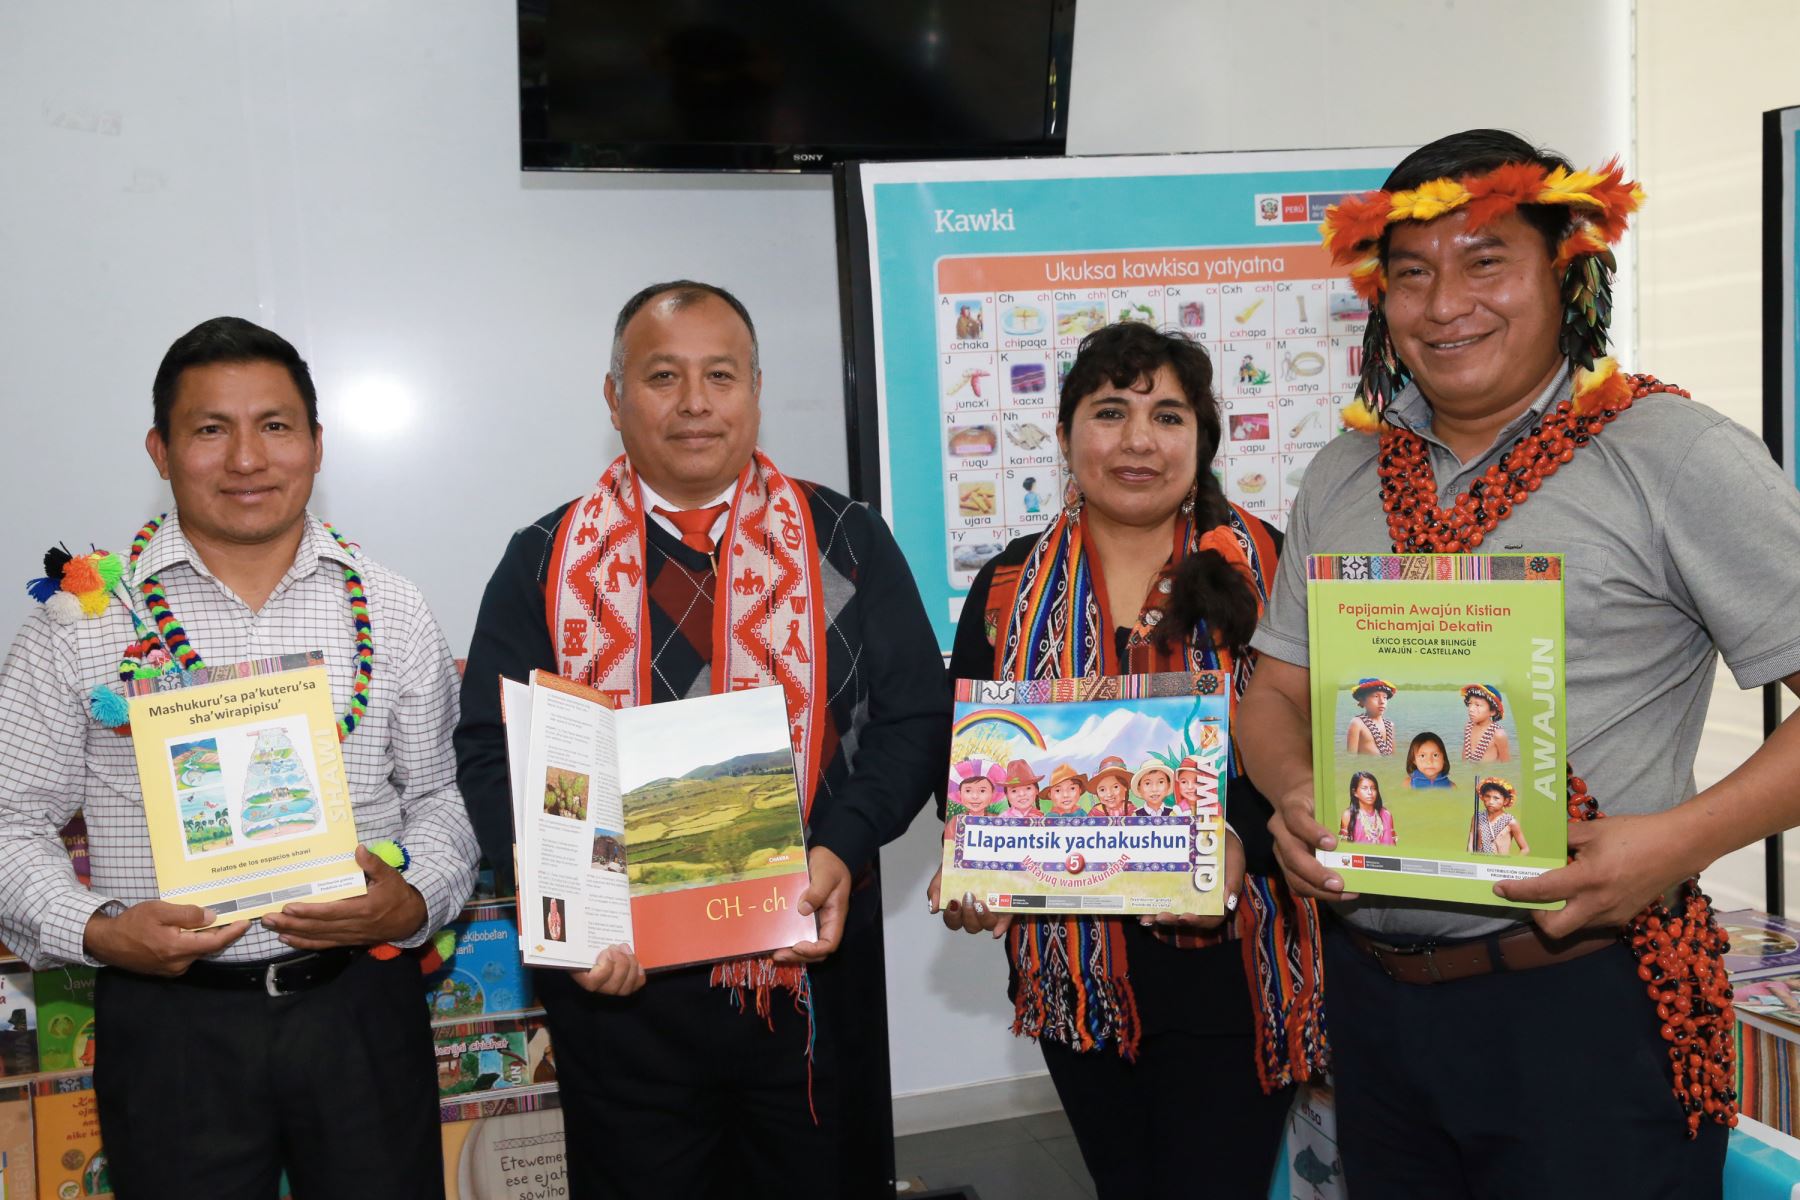 El Perú cuenta actualmente con 48 lenguas originarias, de las cuales 40 cuentan con alfabetos y grafías oficiales que han permitido la elaboración de diversos materiales educativos para los estudiantes que hablan una lengua originaria y pertenecen a un pueblo indígena, informó el Ministerio de Educación (Minedu). ANDINA/Norman Córdova